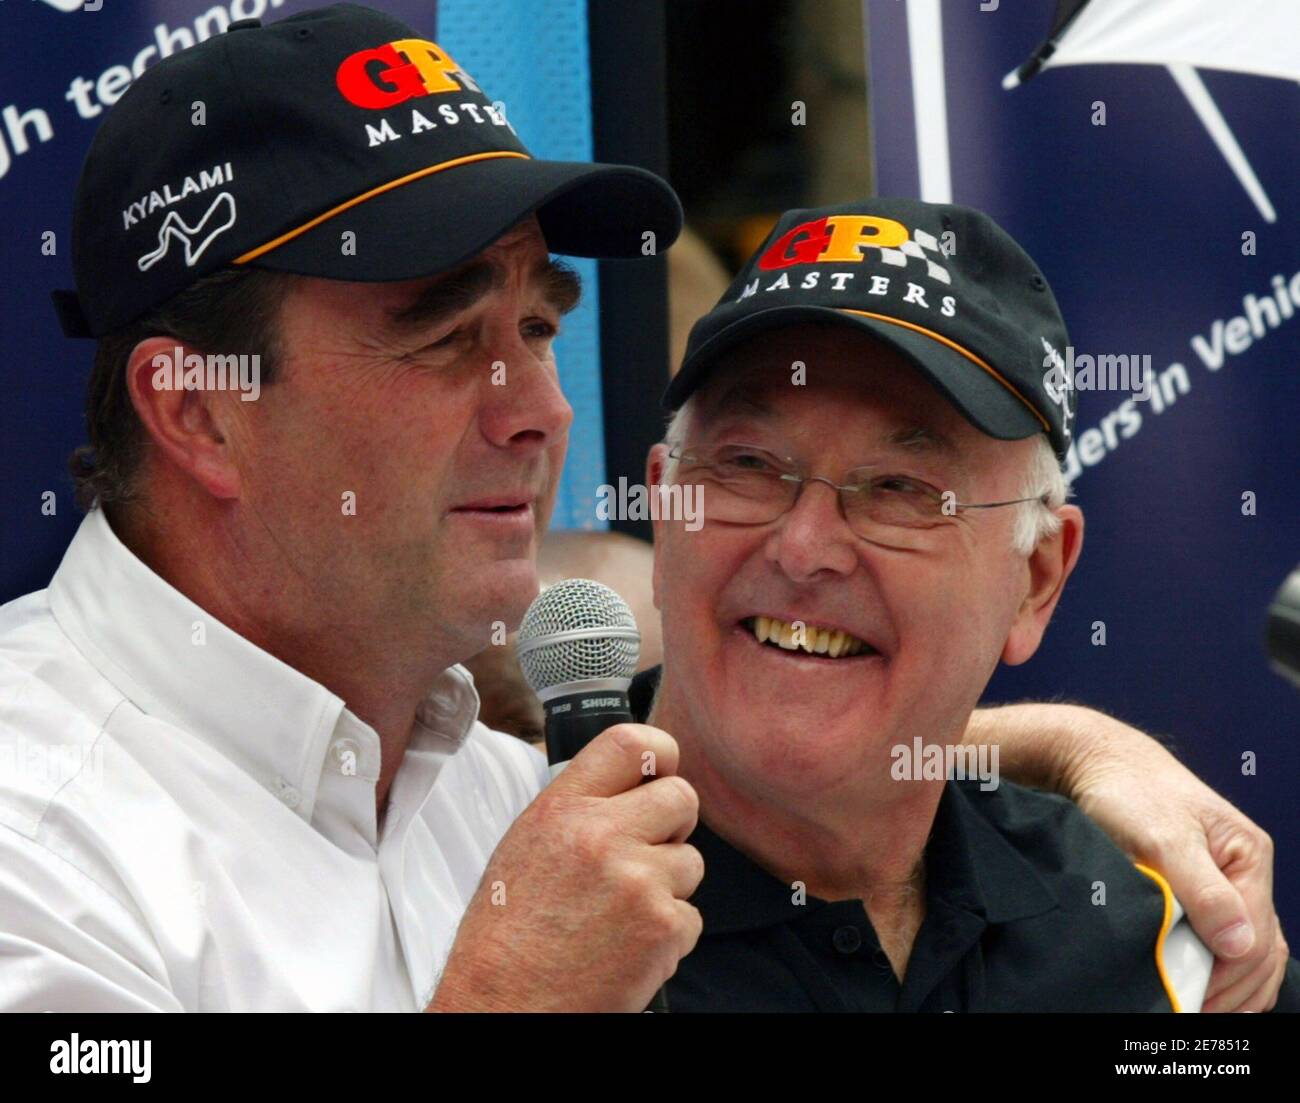 Nigel Mansell (L) en Grande-Bretagne et Murray Walker, commentateur de Formule 1 à la retraite, assistent à une conférence de presse pour la série de maîtres du Grand Prix d'Afrique du Sud à Johannesburg le 10 novembre 2005. REUTERS/Juma Ngwenya Banque D'Images